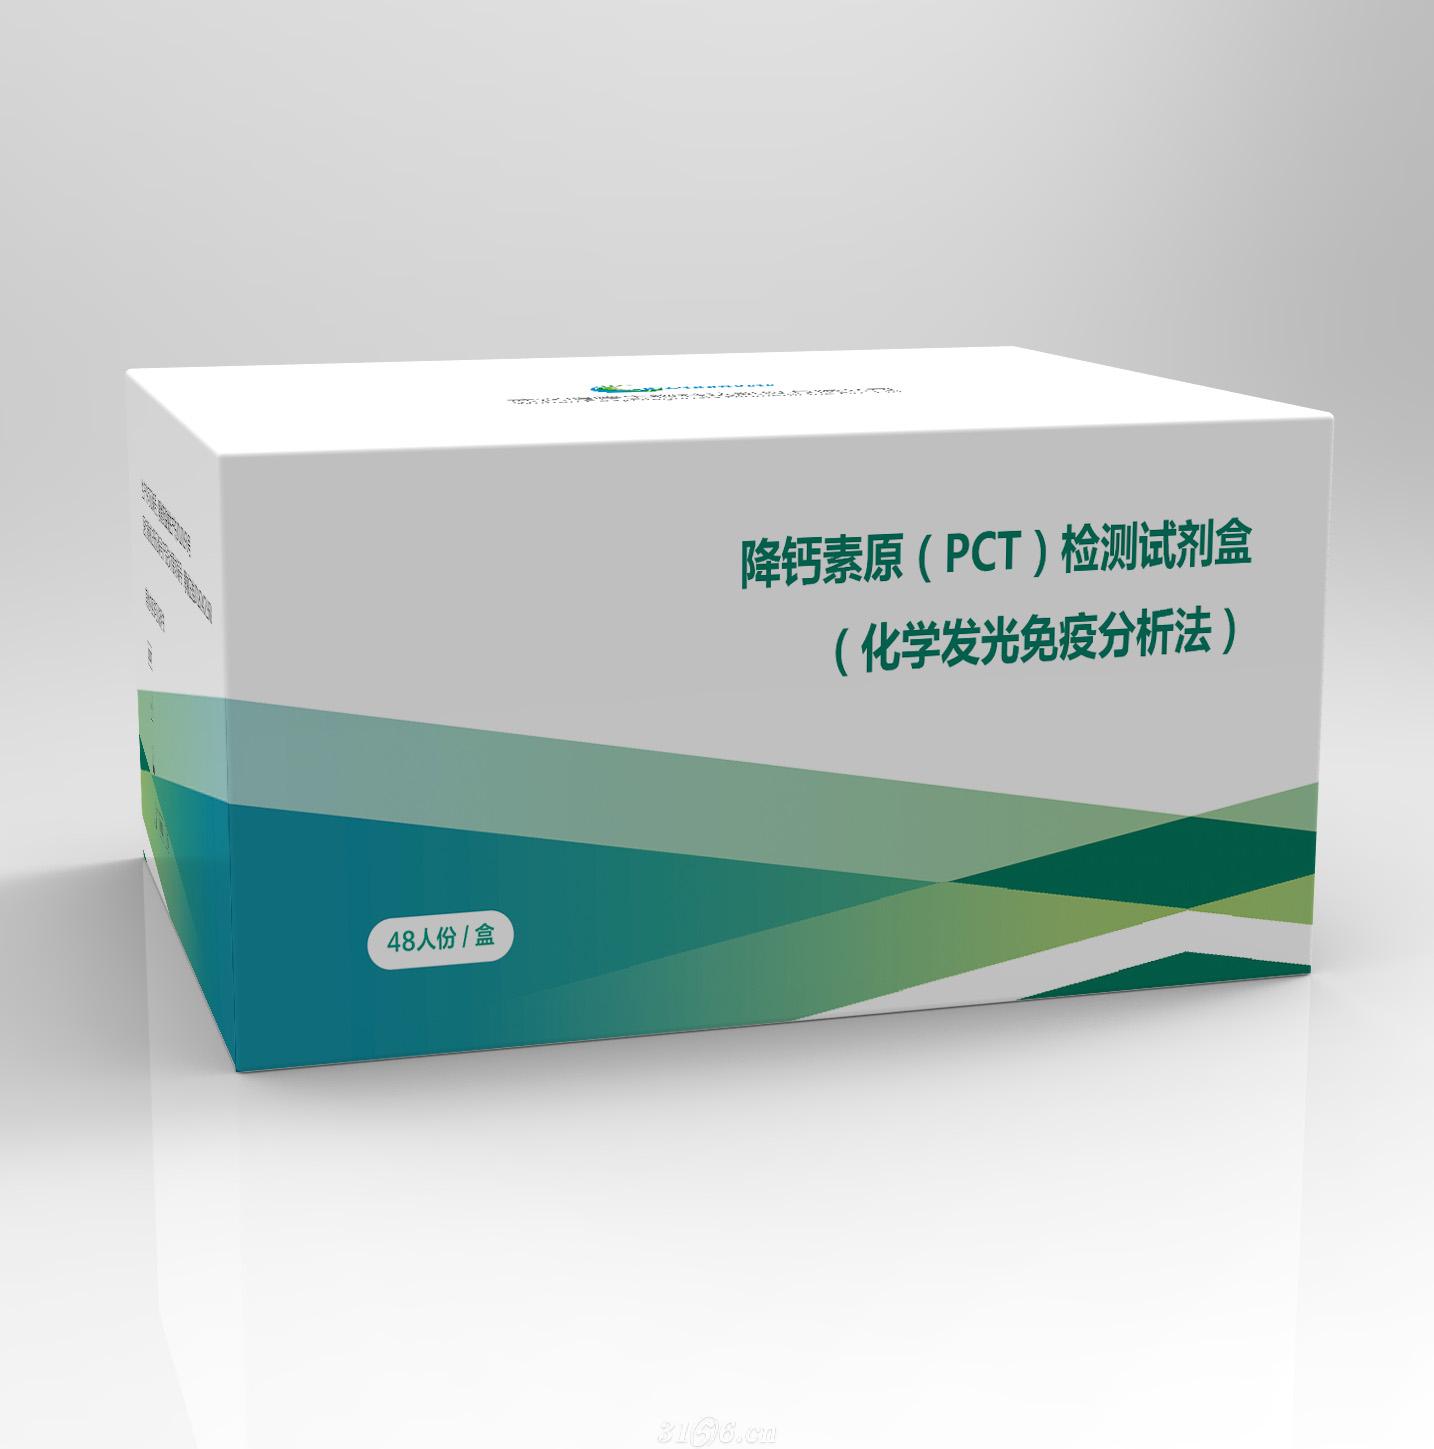 降钙素原（PCT）检测试剂盒（化学发光免疫分析法）